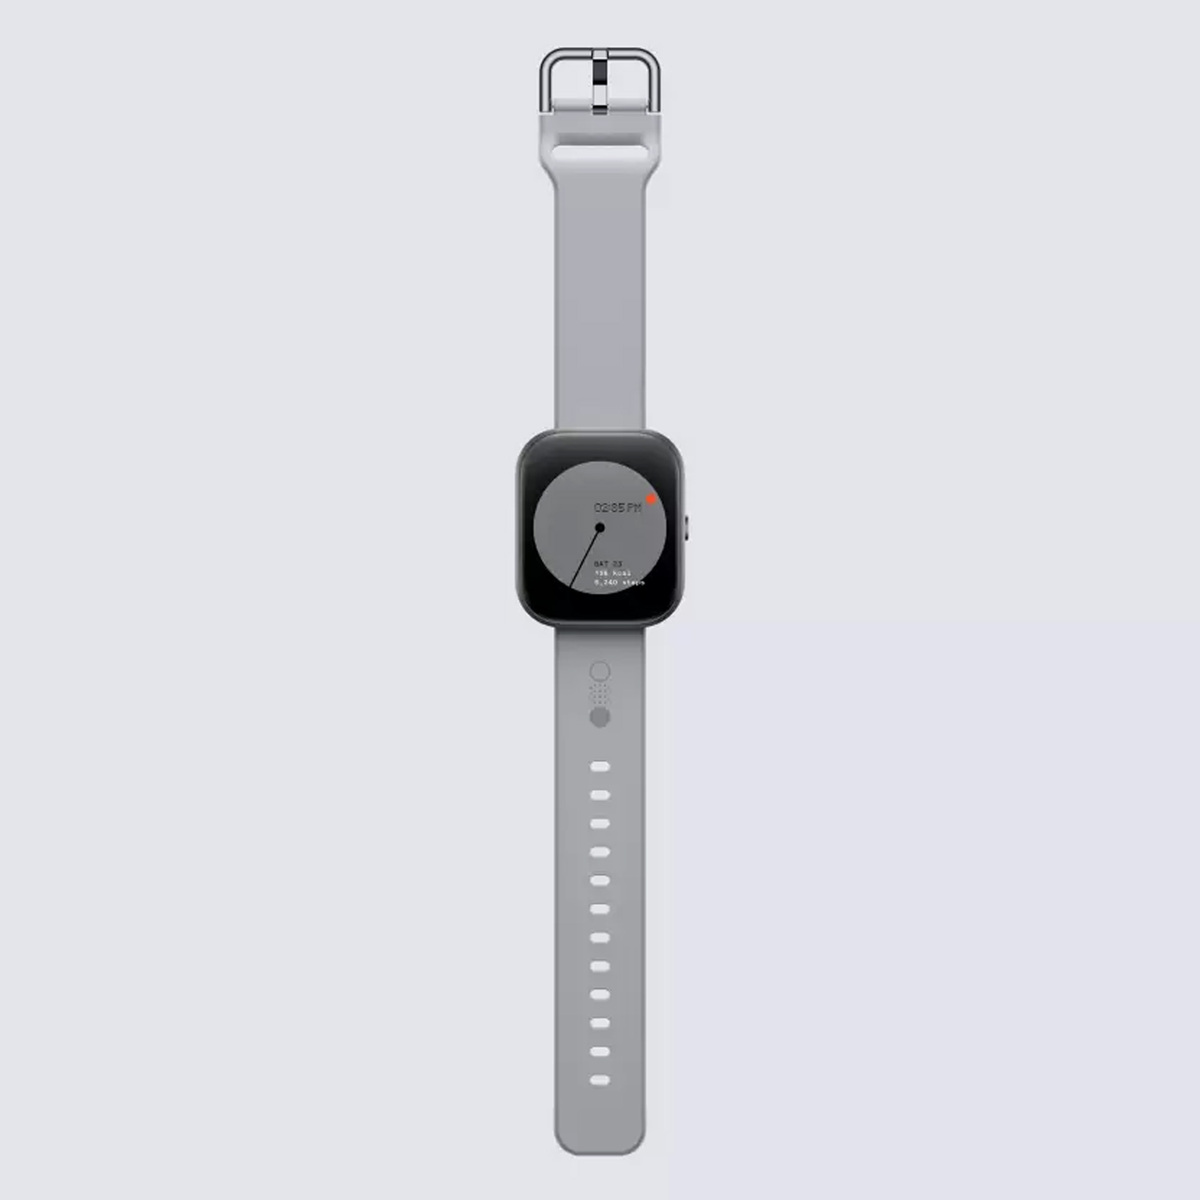 سي إم إف باي نثنج ساعة برو جي بي إس الذكية، 1.96 بوصة، رمادي داكن مع سوار رمادي مقاس واحد